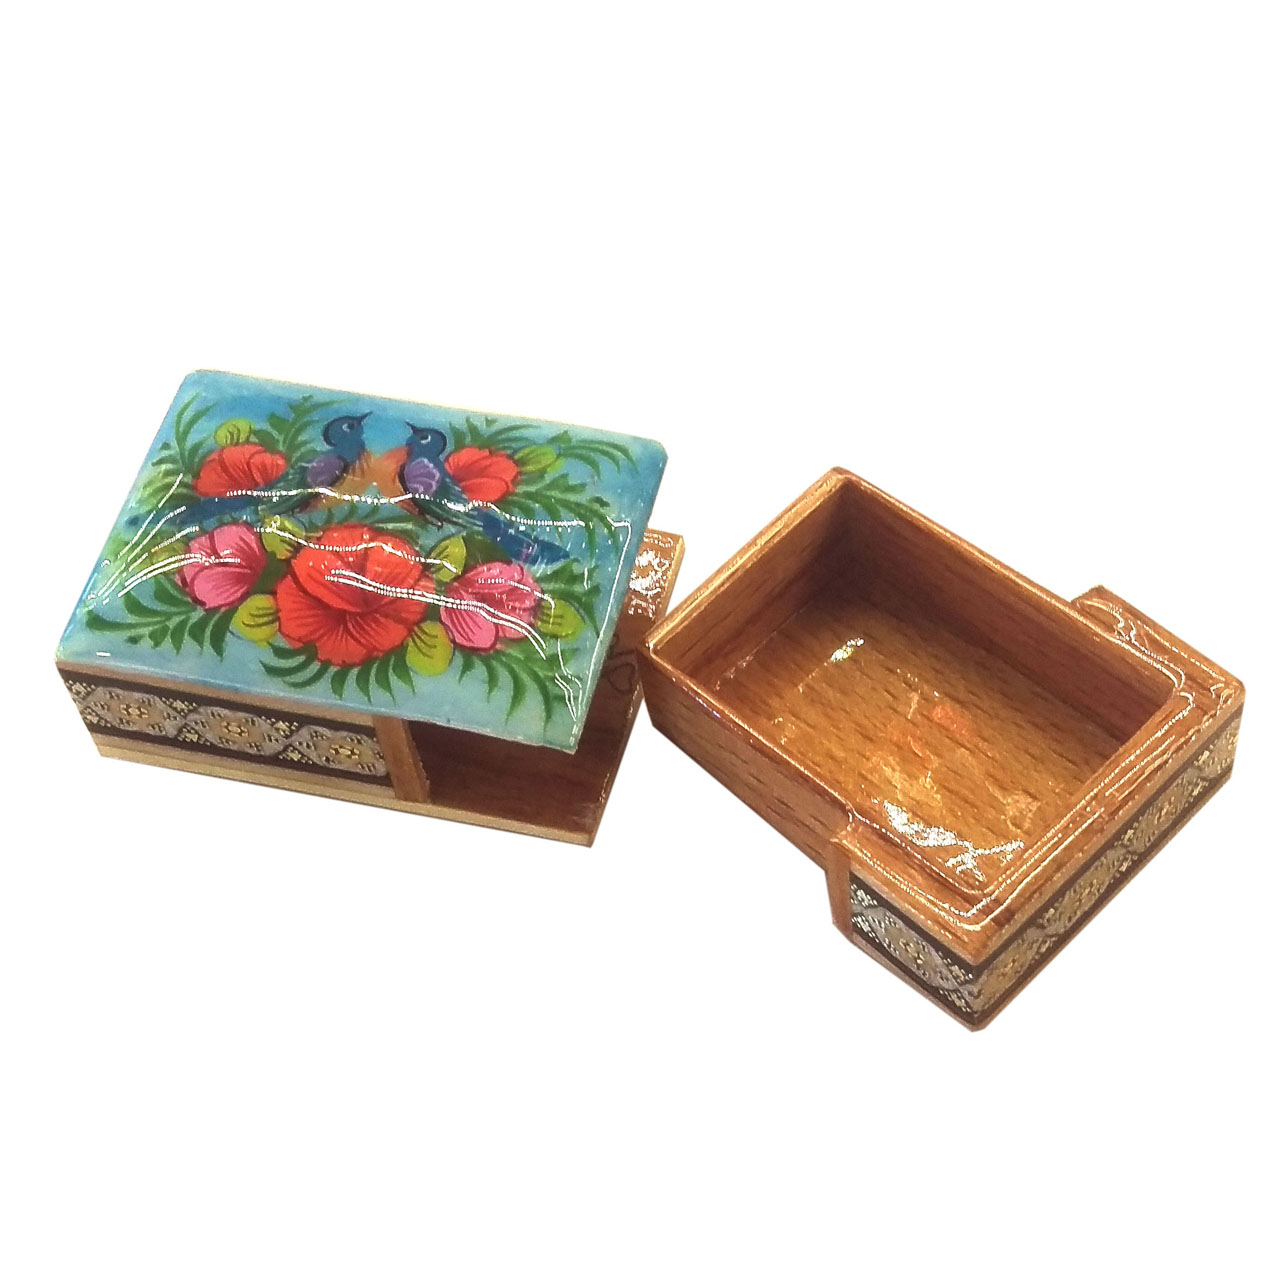 جعبه خاتم لوح هنر طرح گل و پرنده کد 1021 سایز 5×12×12